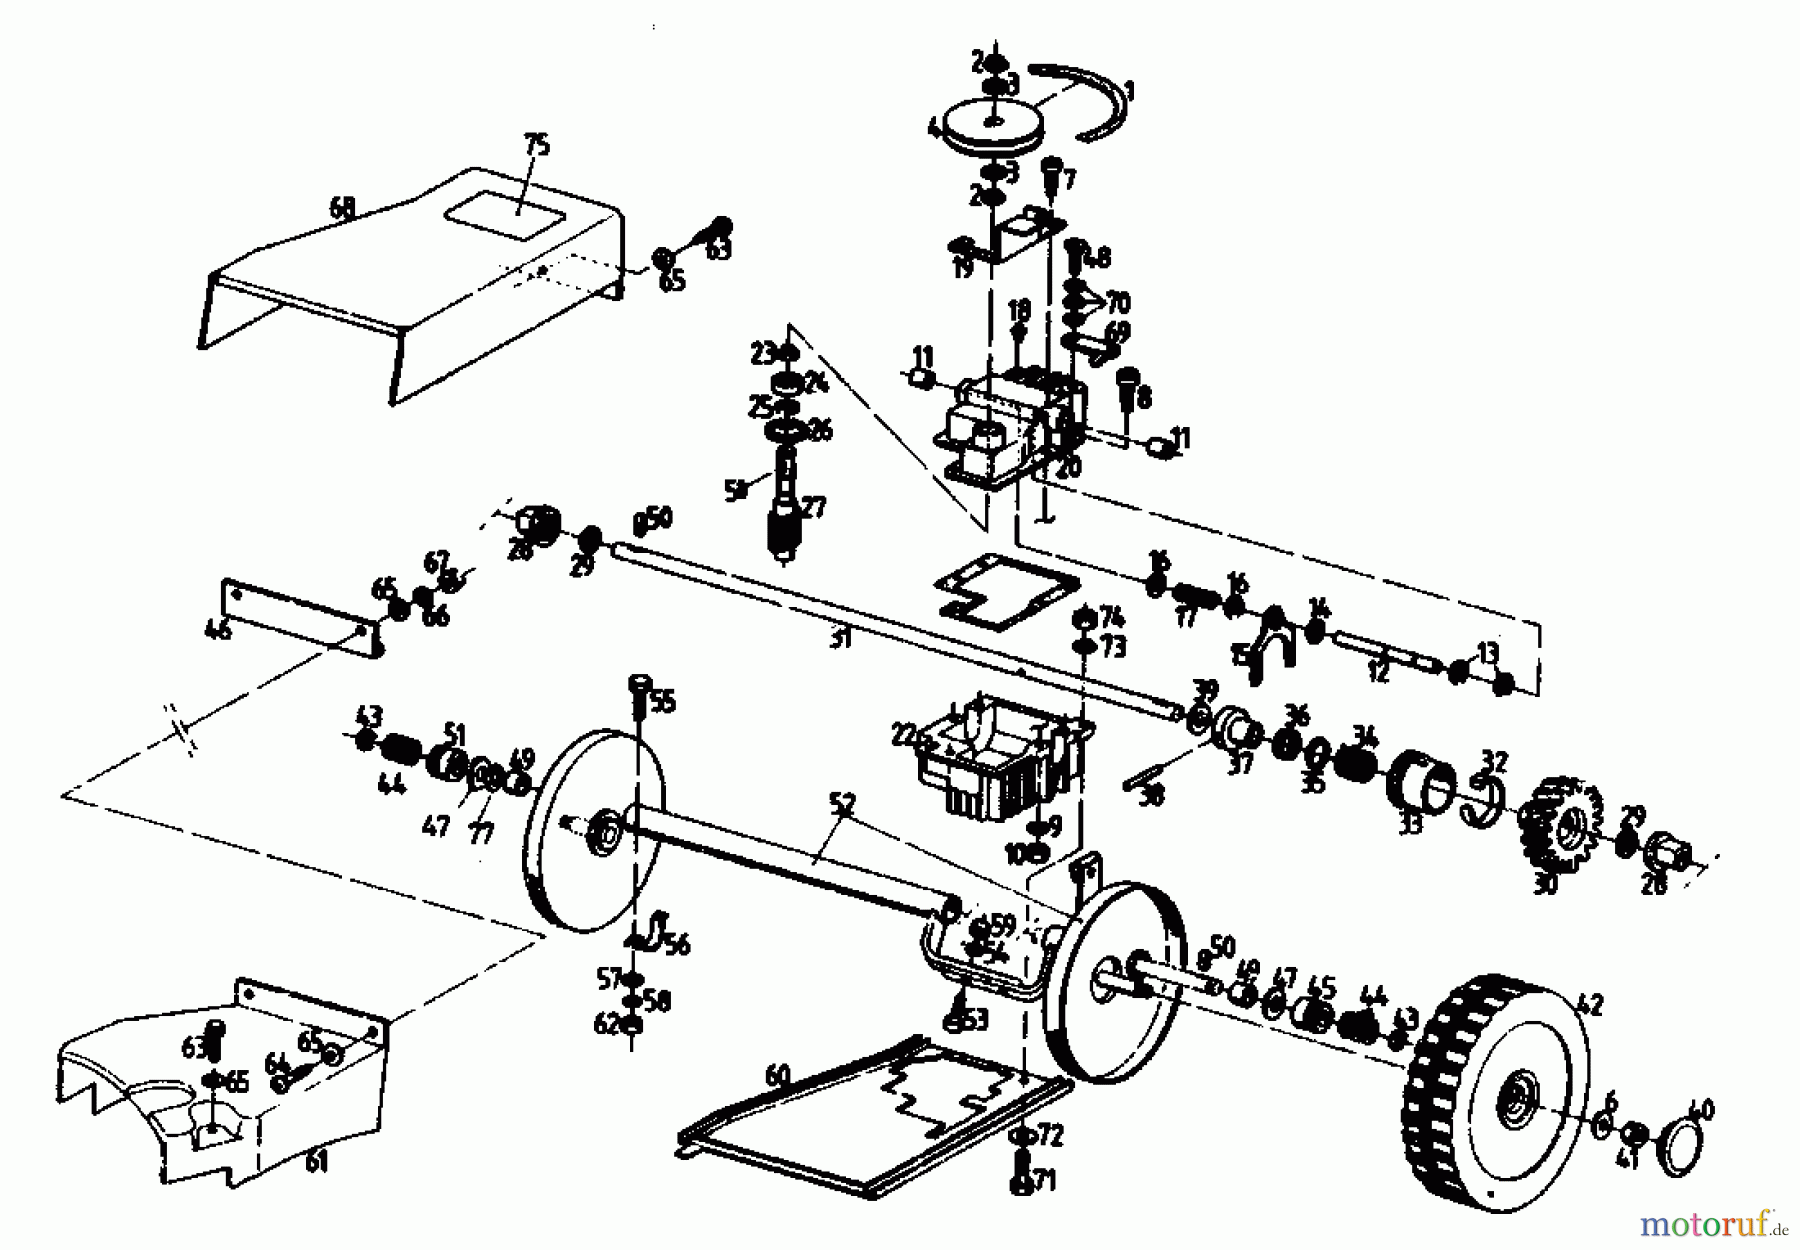  Gutbrod Motormäher mit Antrieb HB 56 R 02849.01  (1989) Getriebe